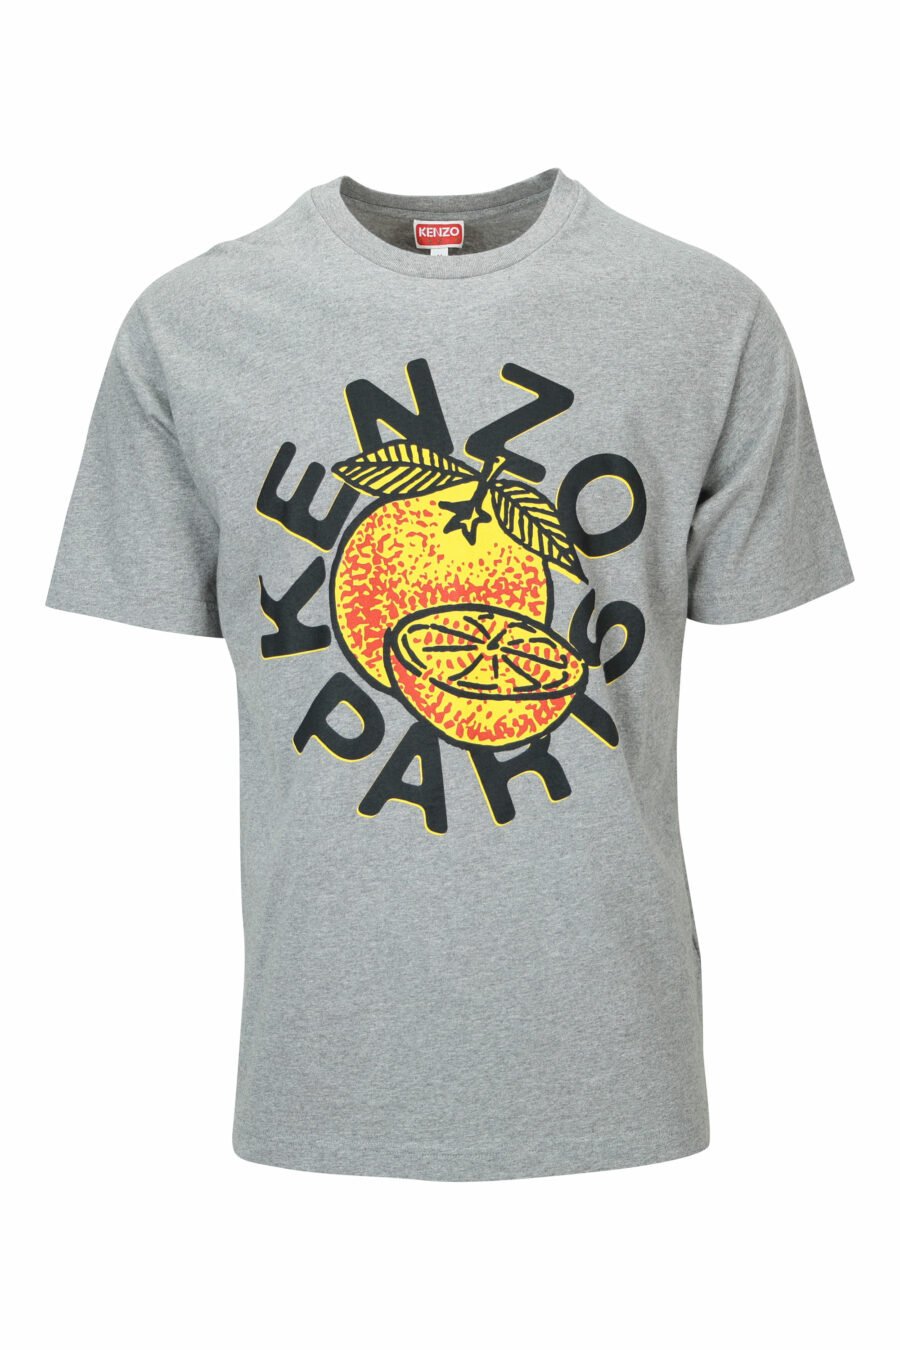 Camiseta gris con maxilogo "kenzo orange" - 3612230629523